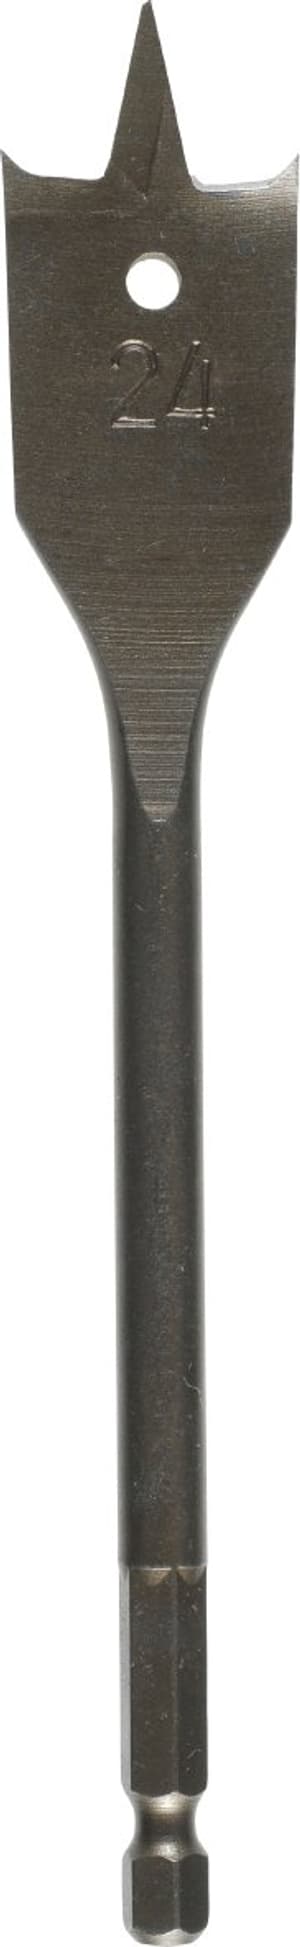 Flachfräsbohrer, ø 16 mm